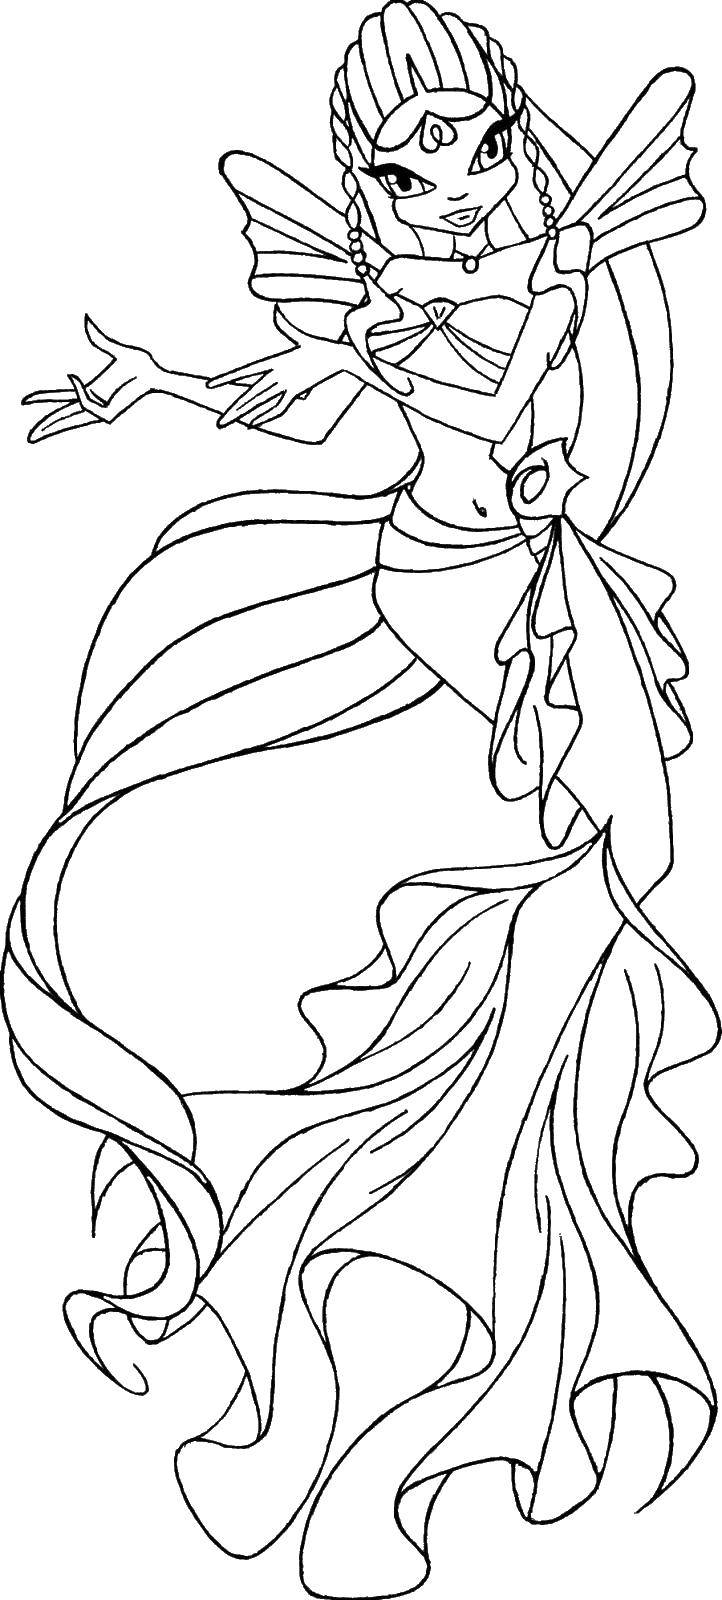 Раскраска Стелла-русалка | Раскраски Винкс Стелла (Winx Stella). Раскраска Стелла из мультика Винкс